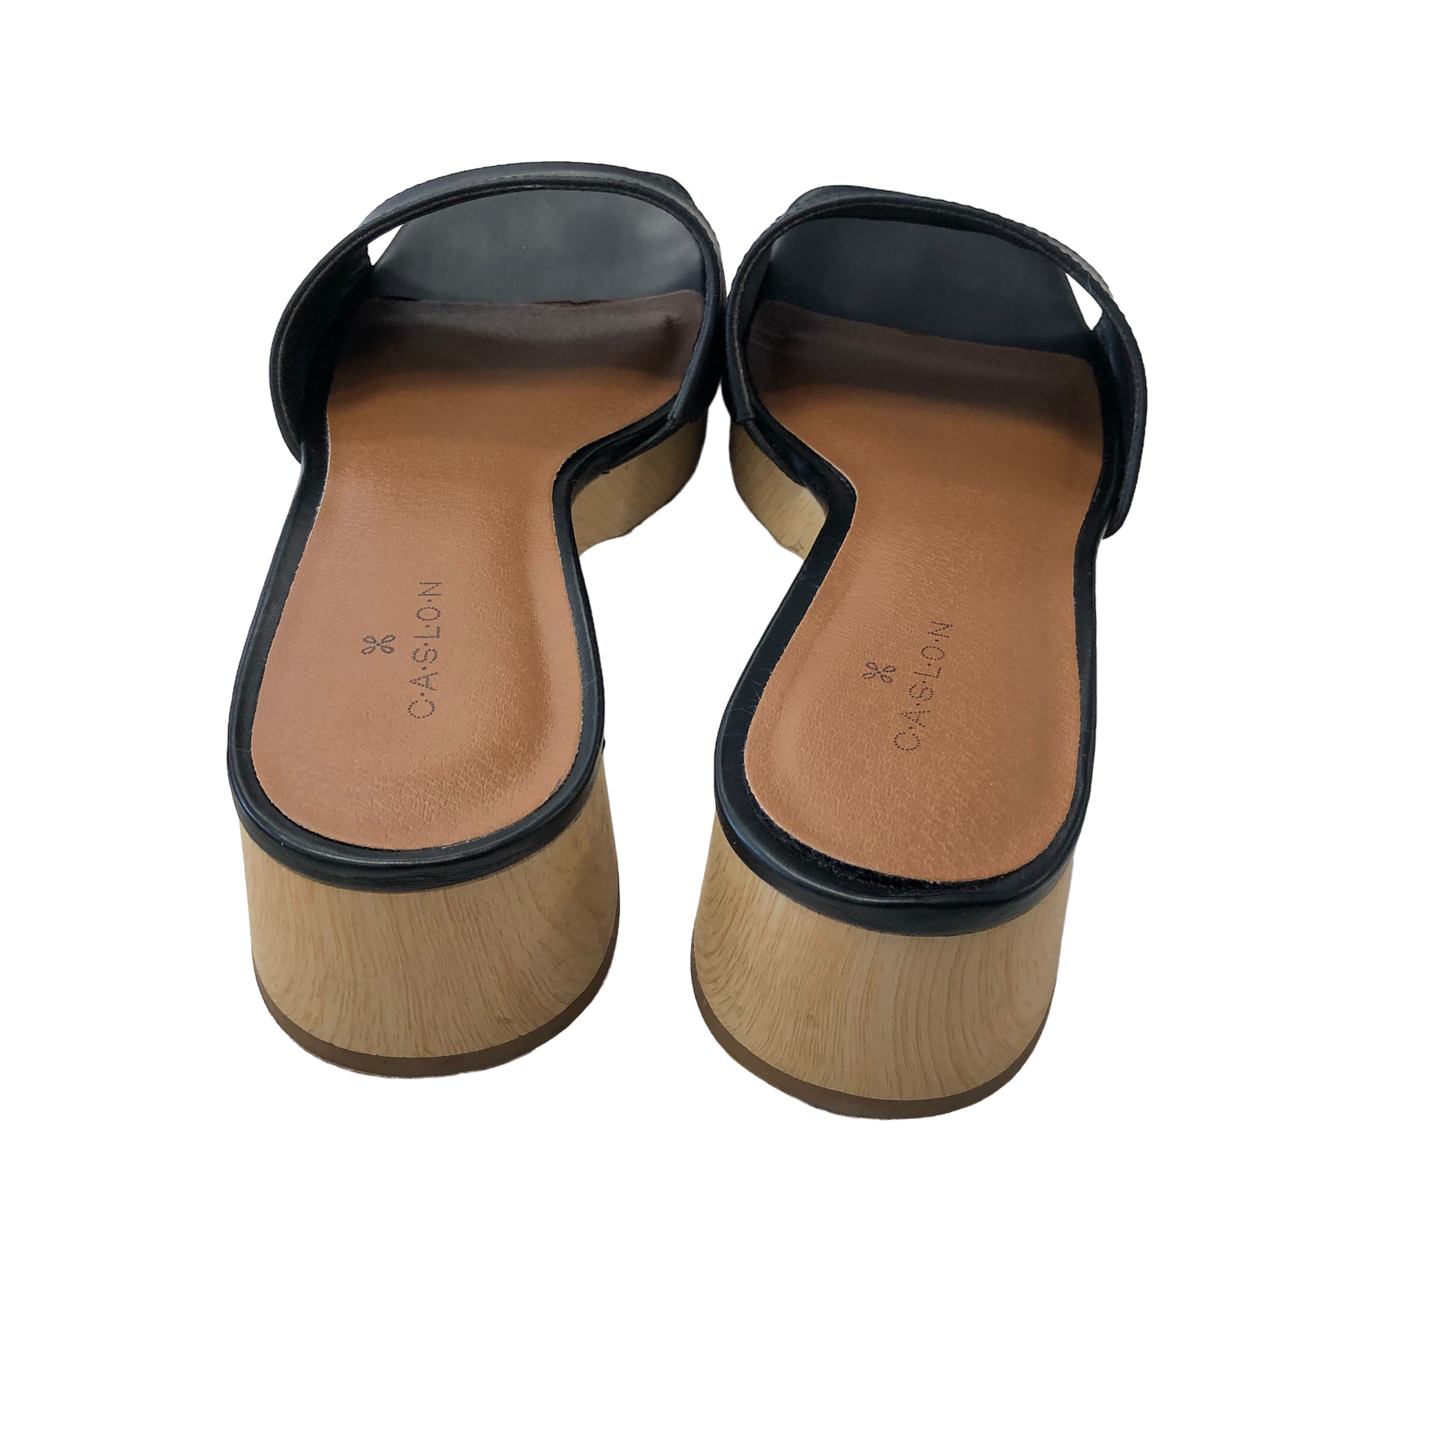 Black Shoes Heels Block Caslon, Size 8